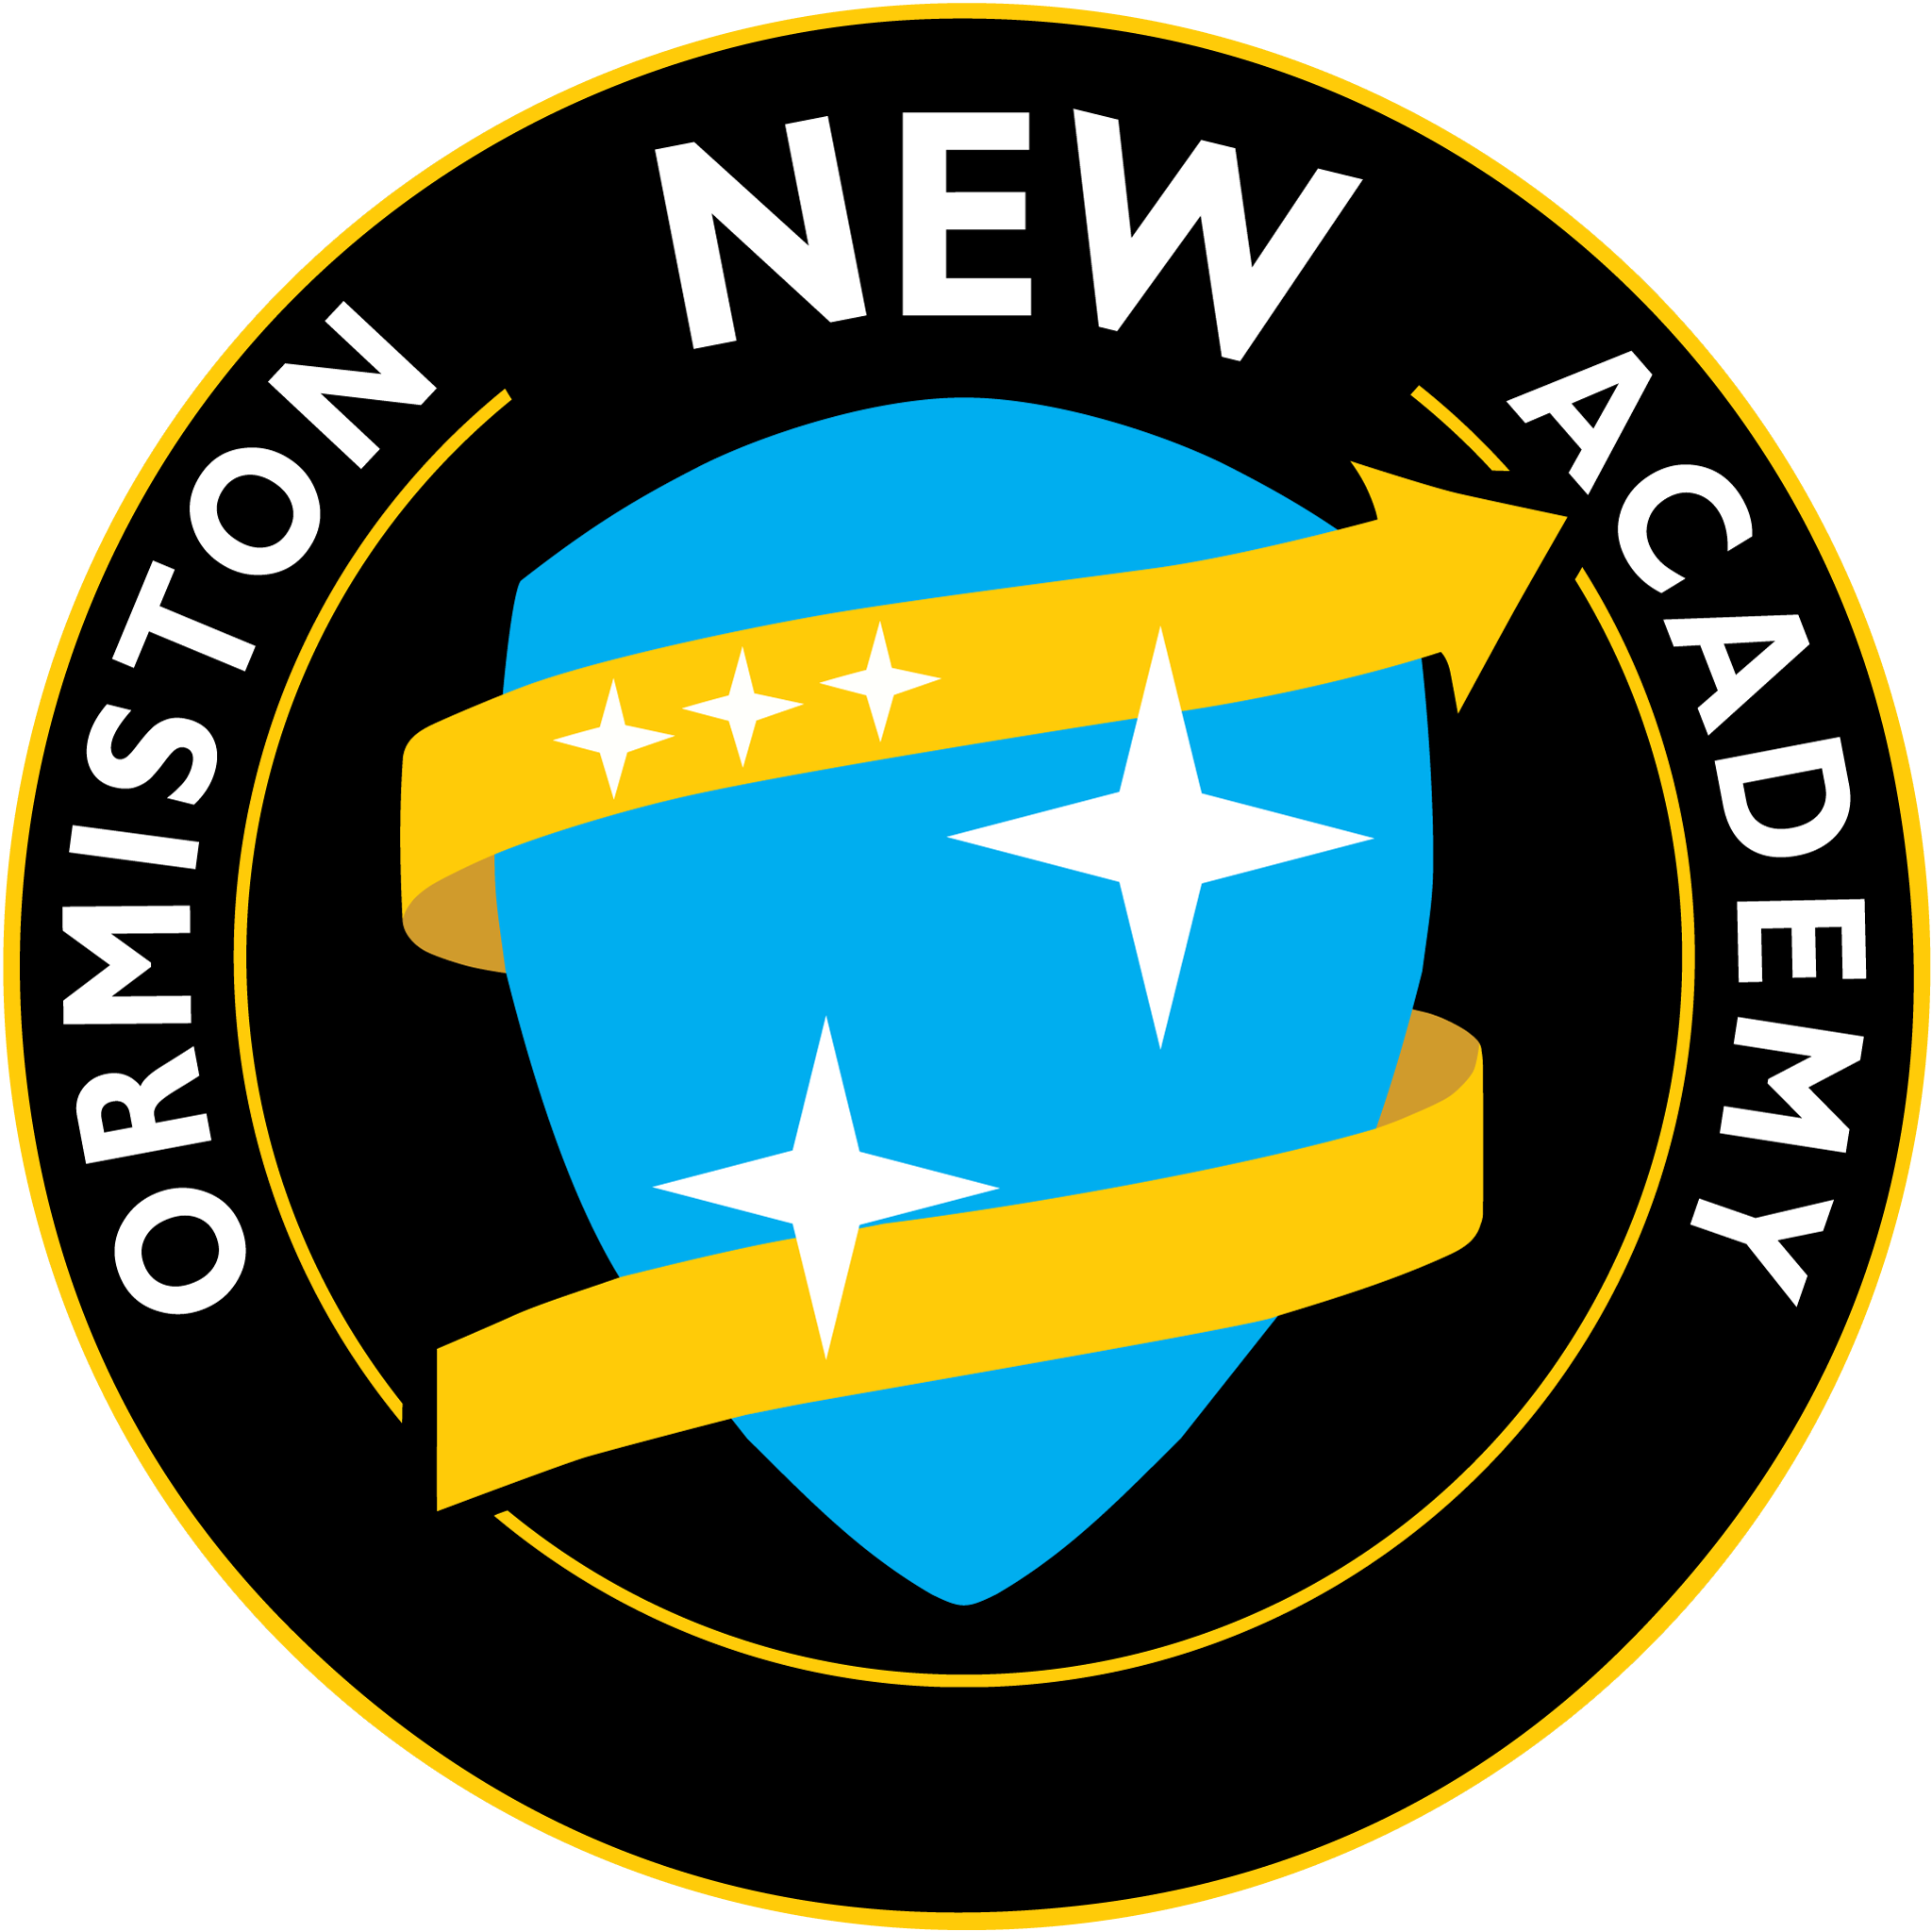 Ormiston NEW Academy校徽